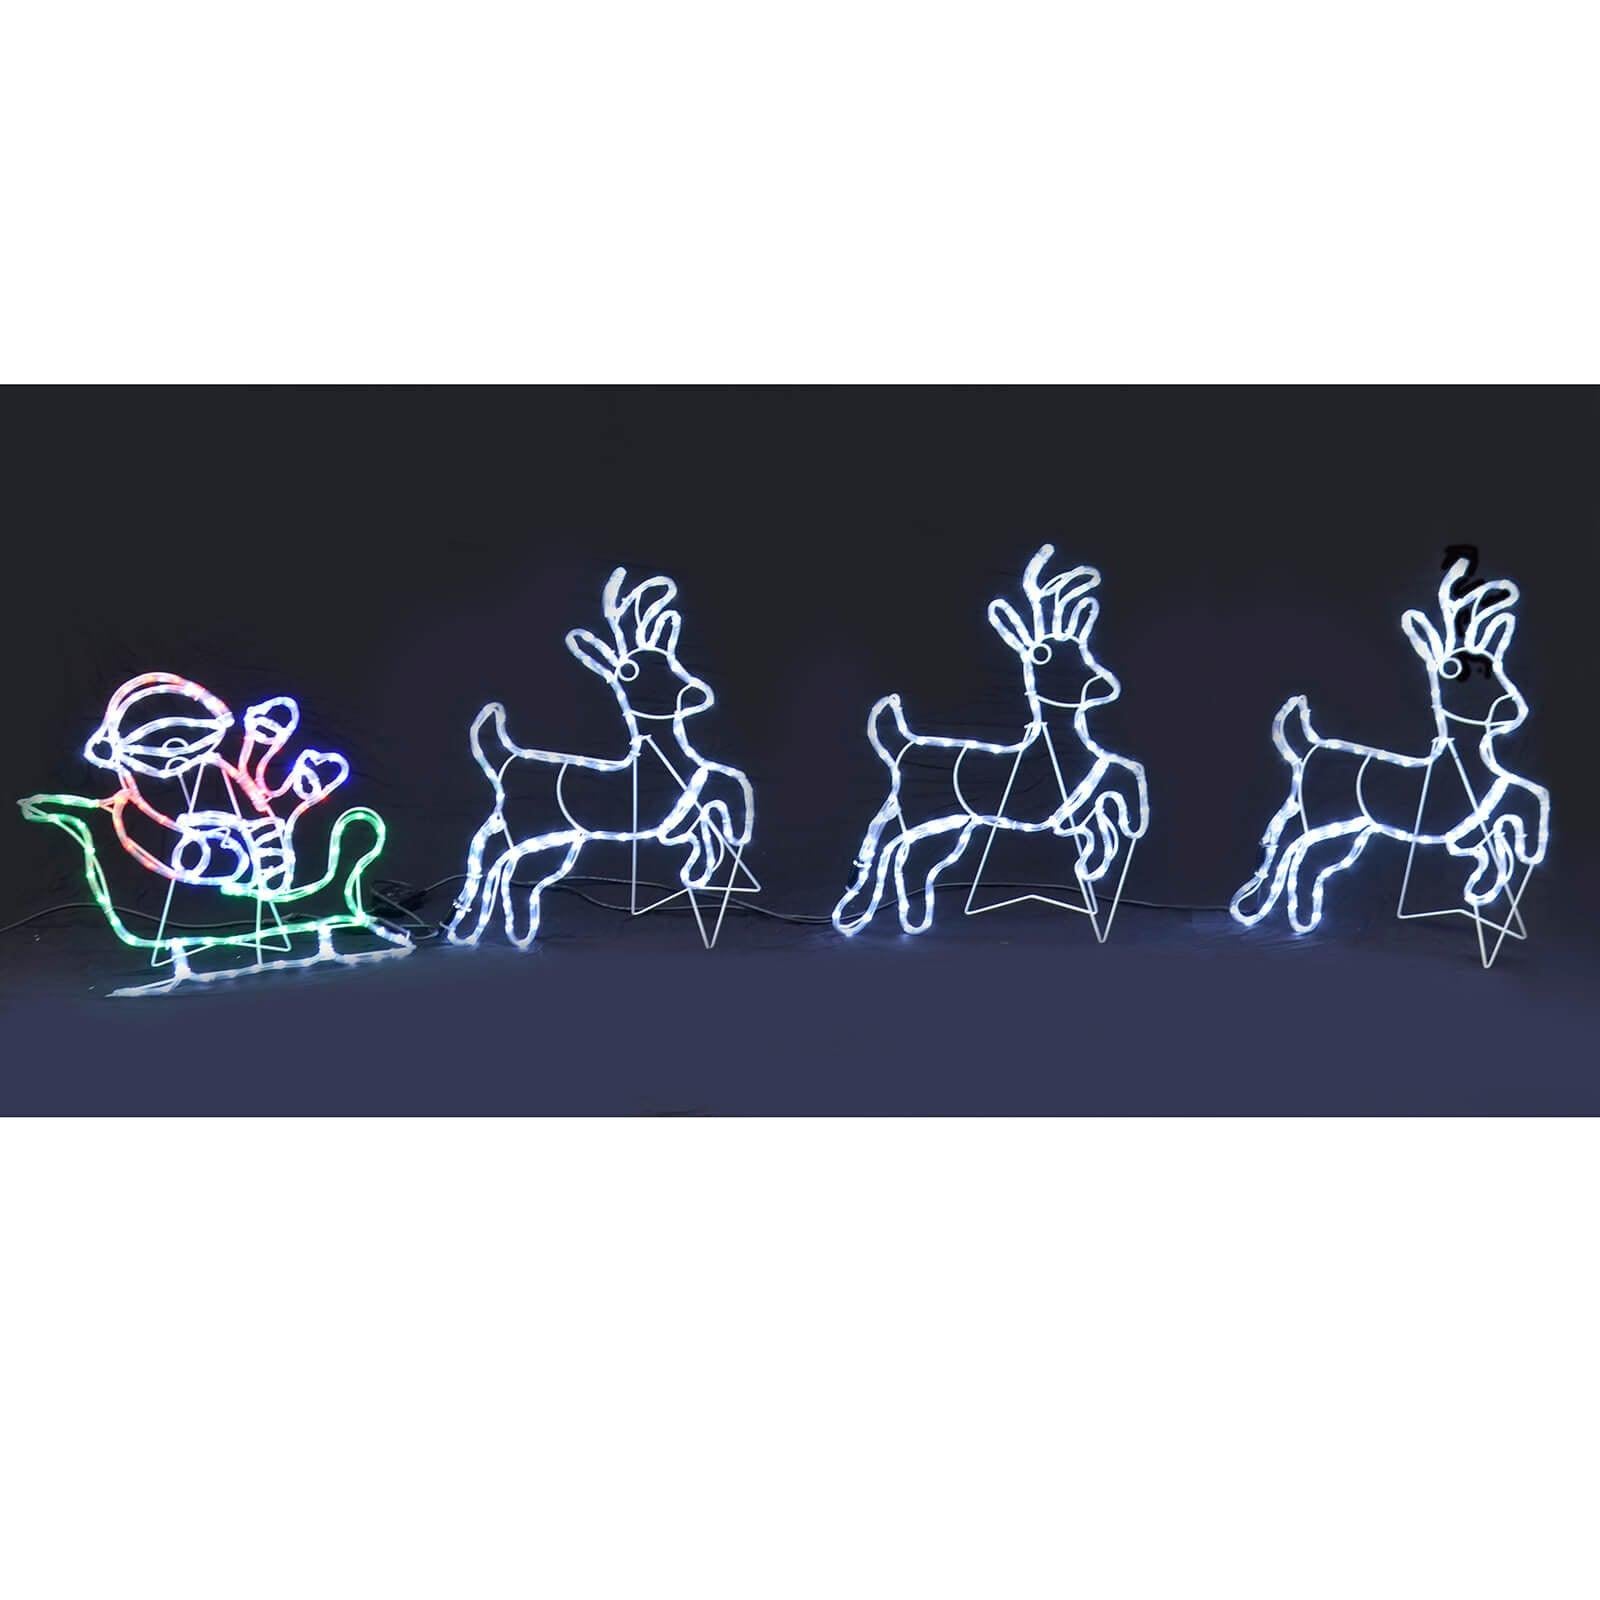 Mr Crimbo 2.5m Animated LED Santa Sleigh Christmas Rope Light - MrCrimbo.co.uk -XS7269 - -